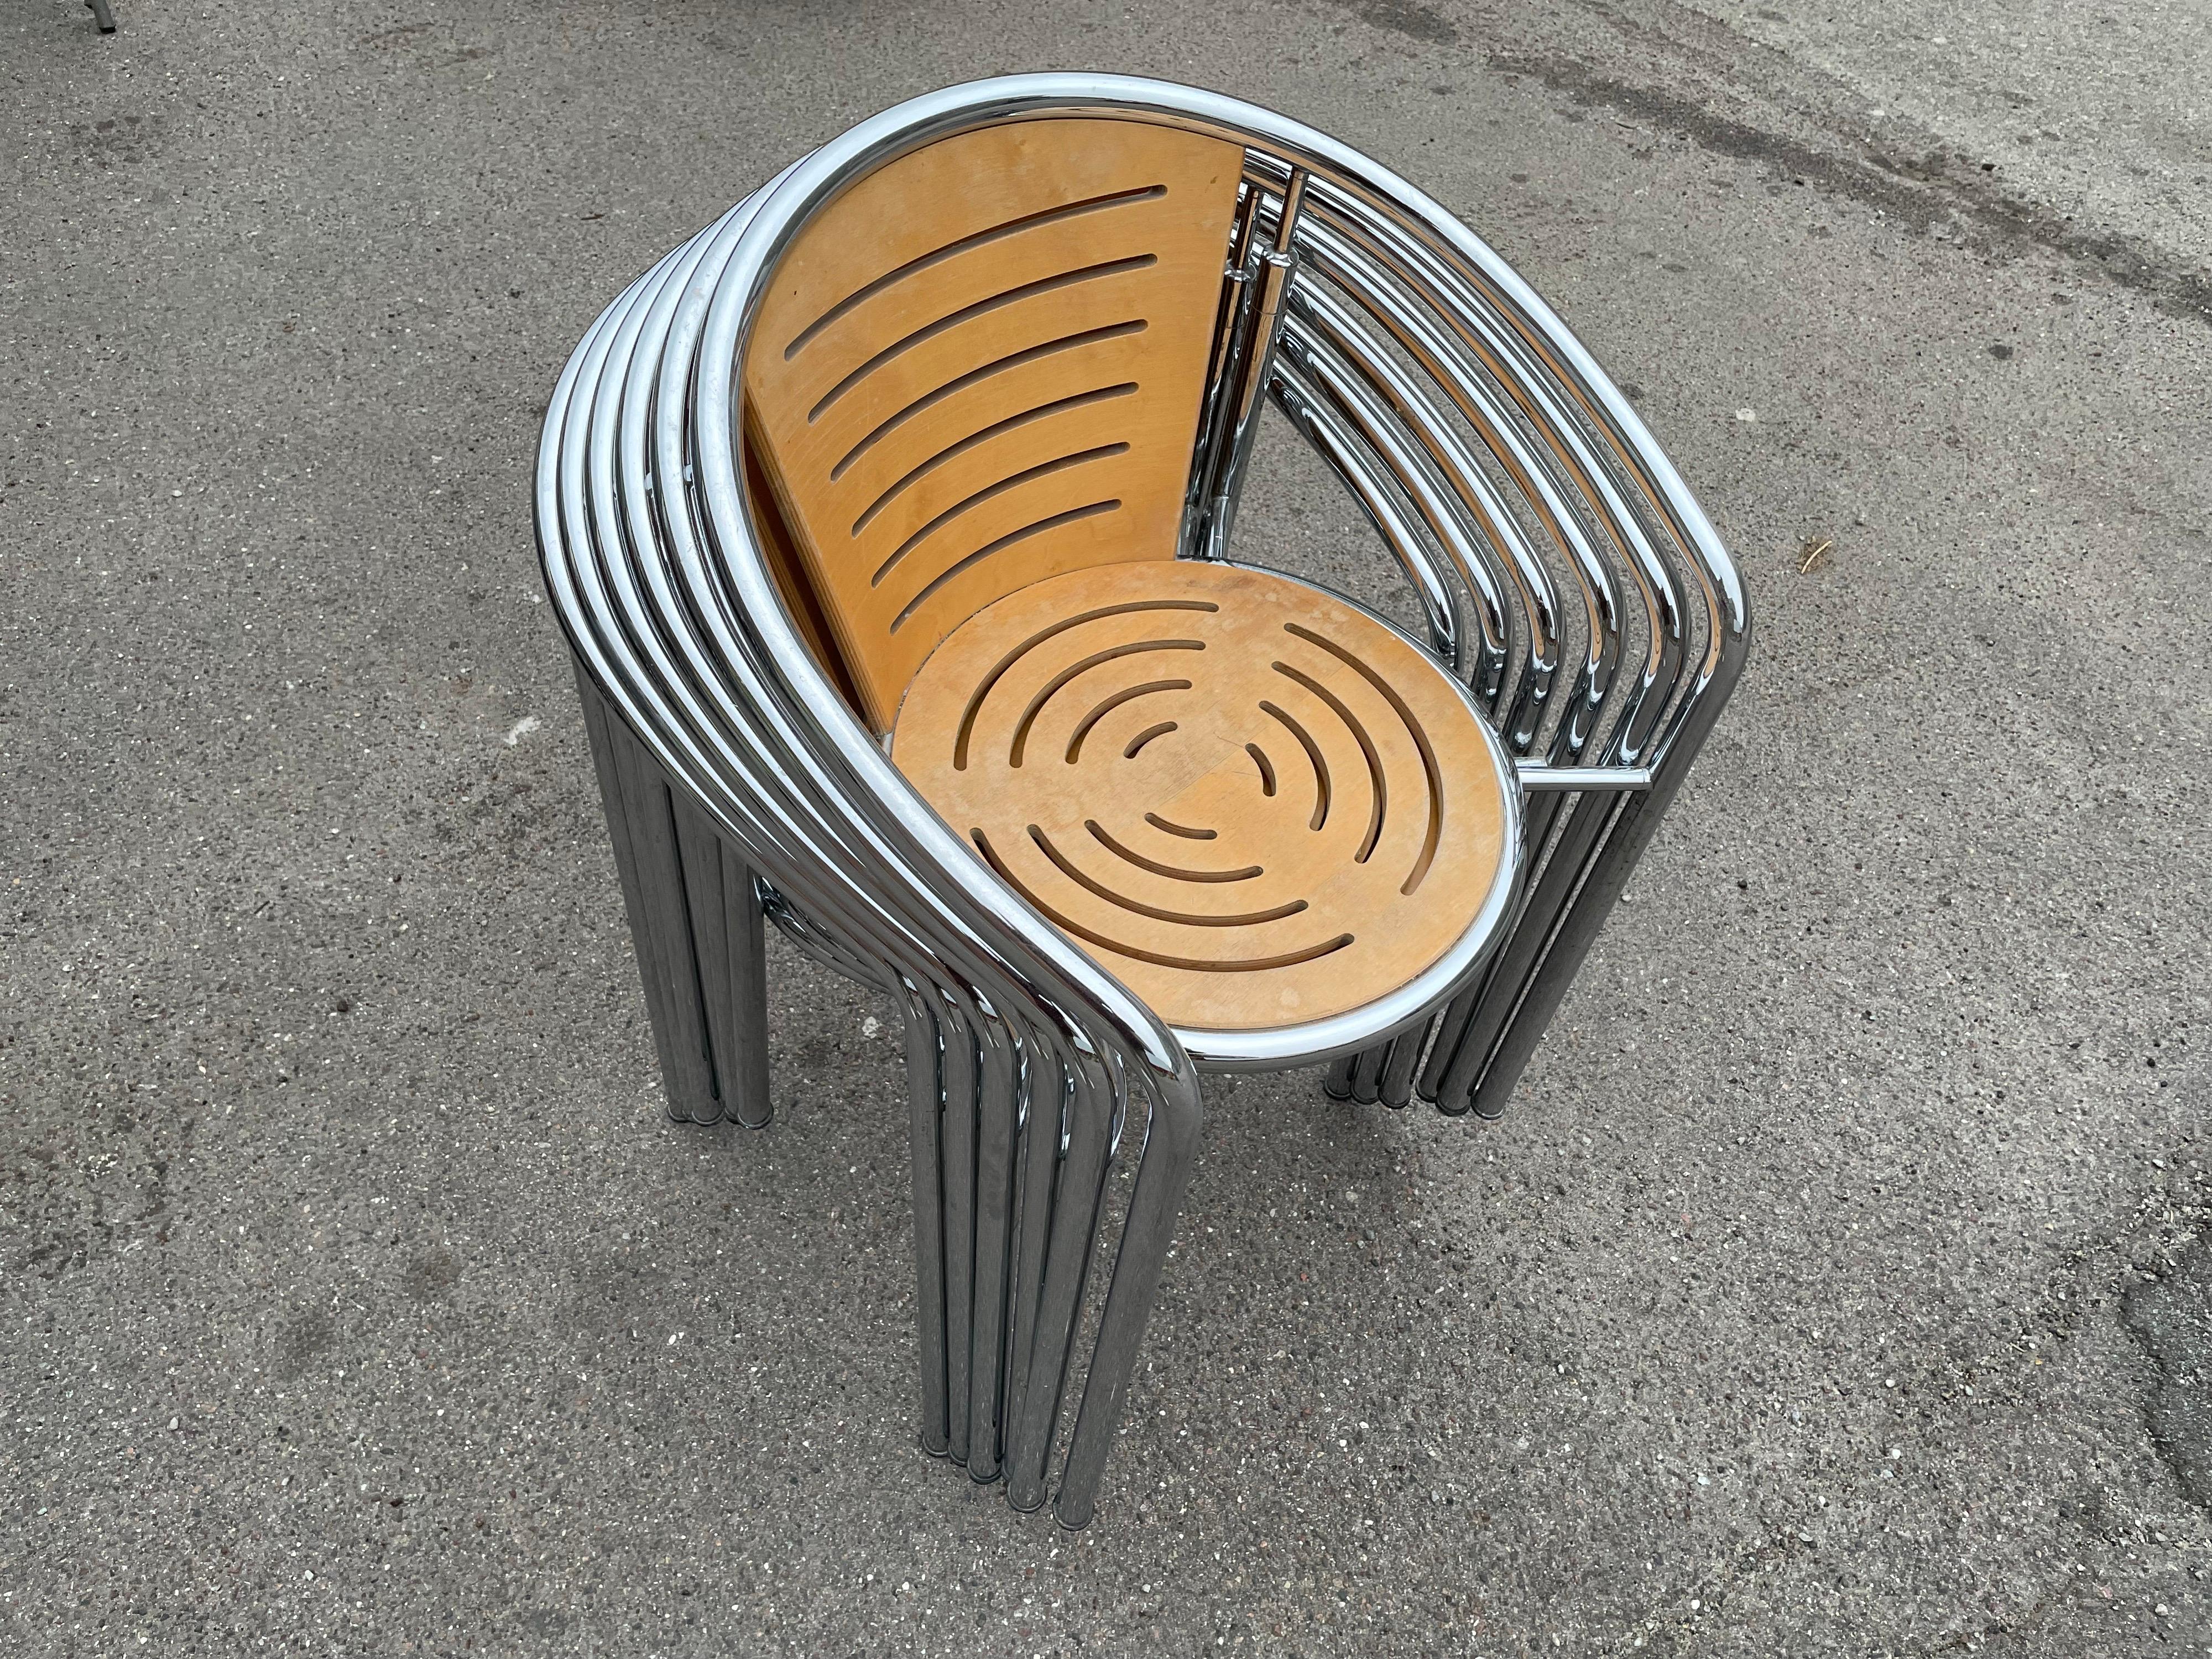 botium chairs